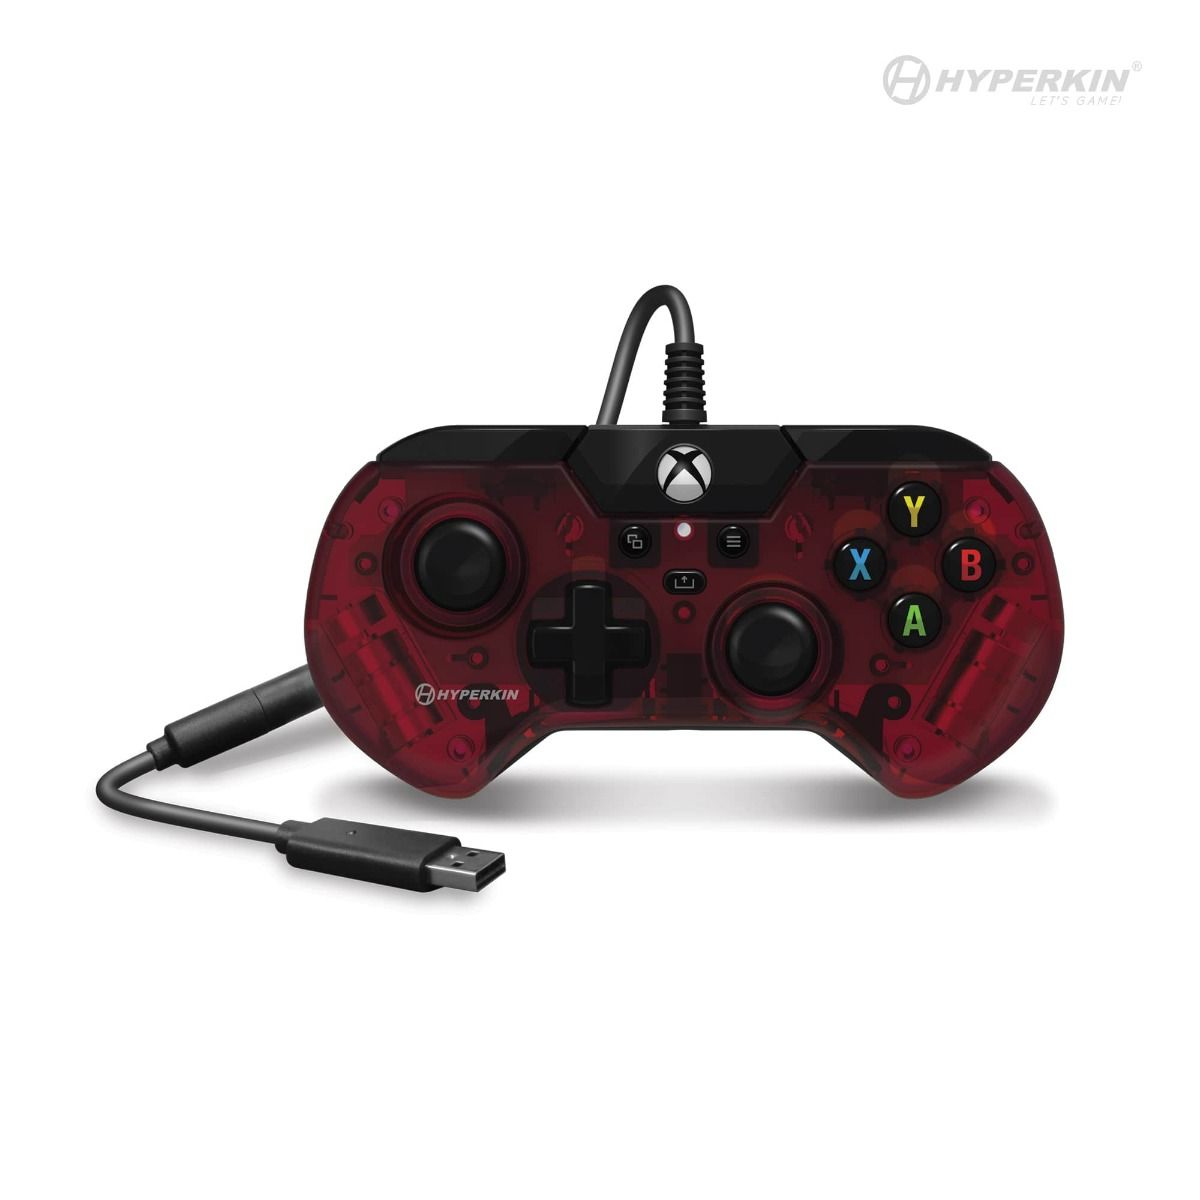 Hyperkin X91 Ice Black, Red USB Gamepad Analogue / Digital Xbox One S, Xbox One X